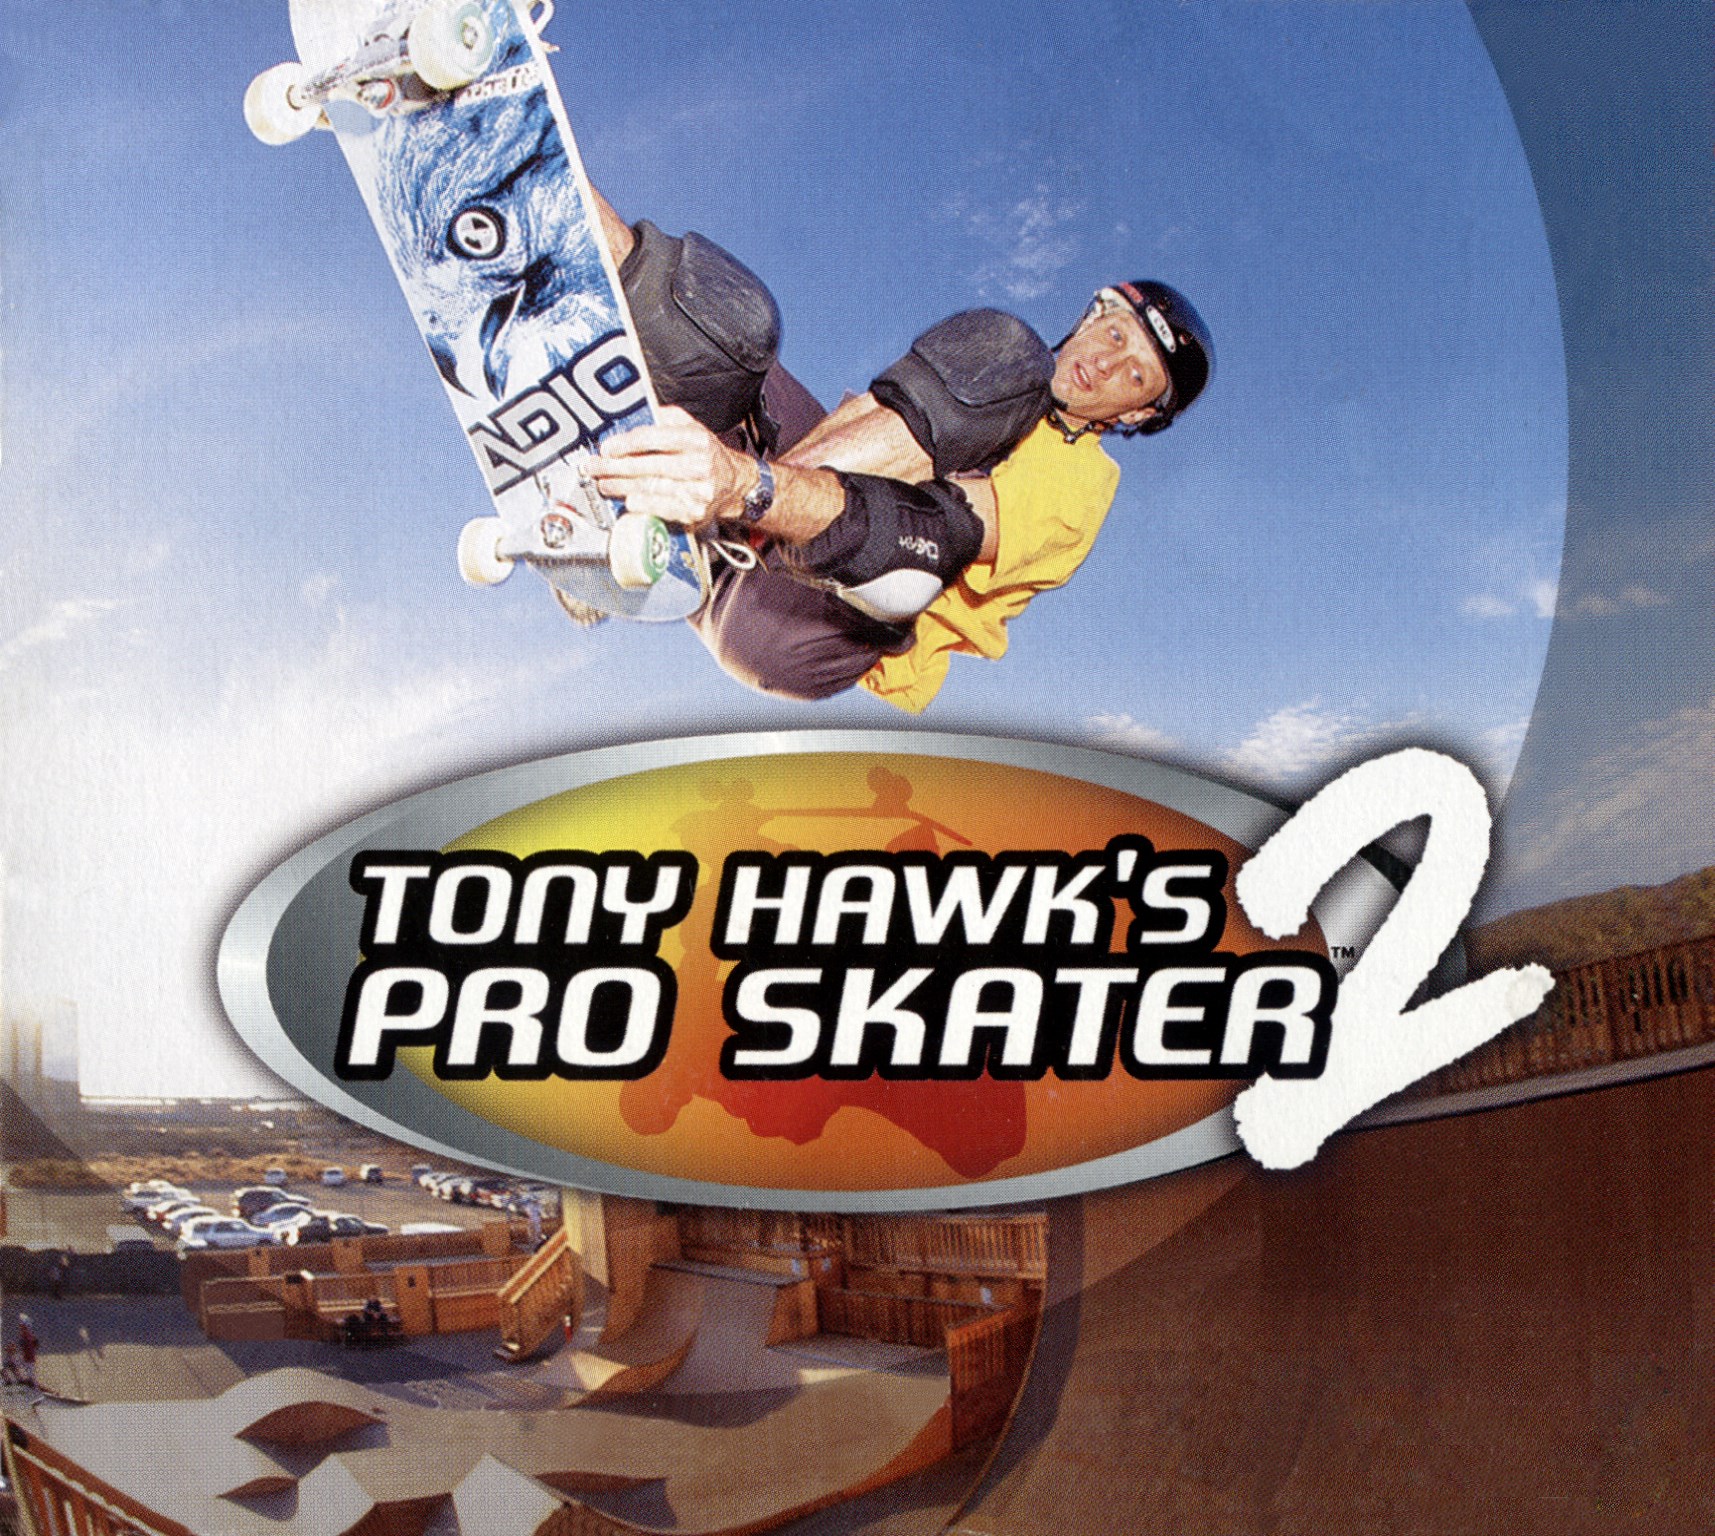 Wallpaper Images Tony Hawks Pro Skater - Tony Hawk's Pro Skater 2 64 , HD Wallpaper & Backgrounds